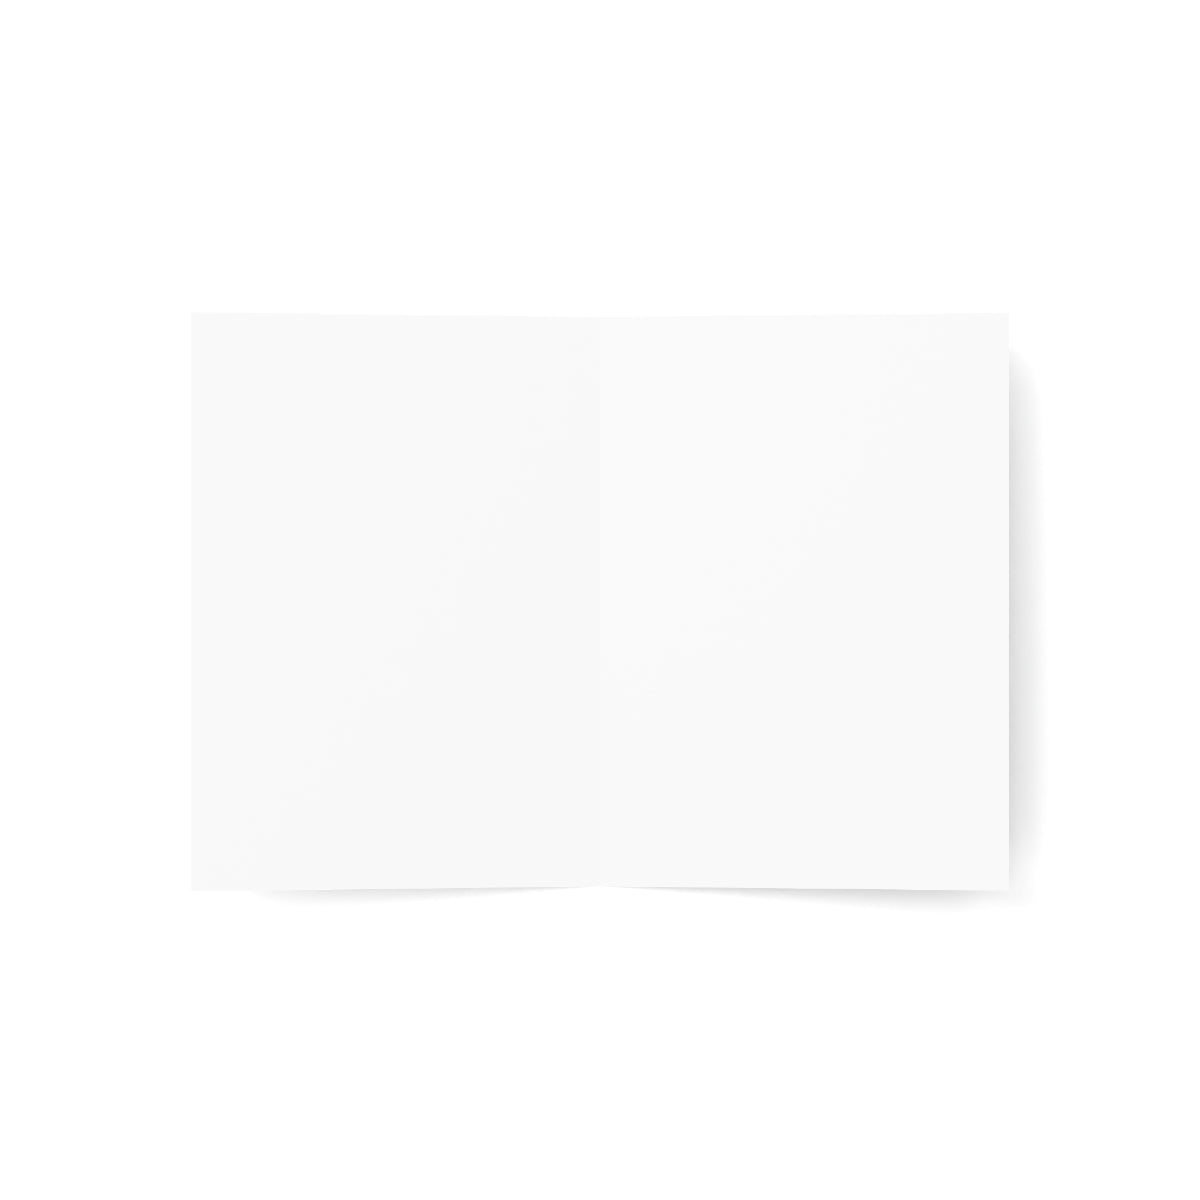 Nashville Folded Matte Notecards + Envelopes (10pcs)